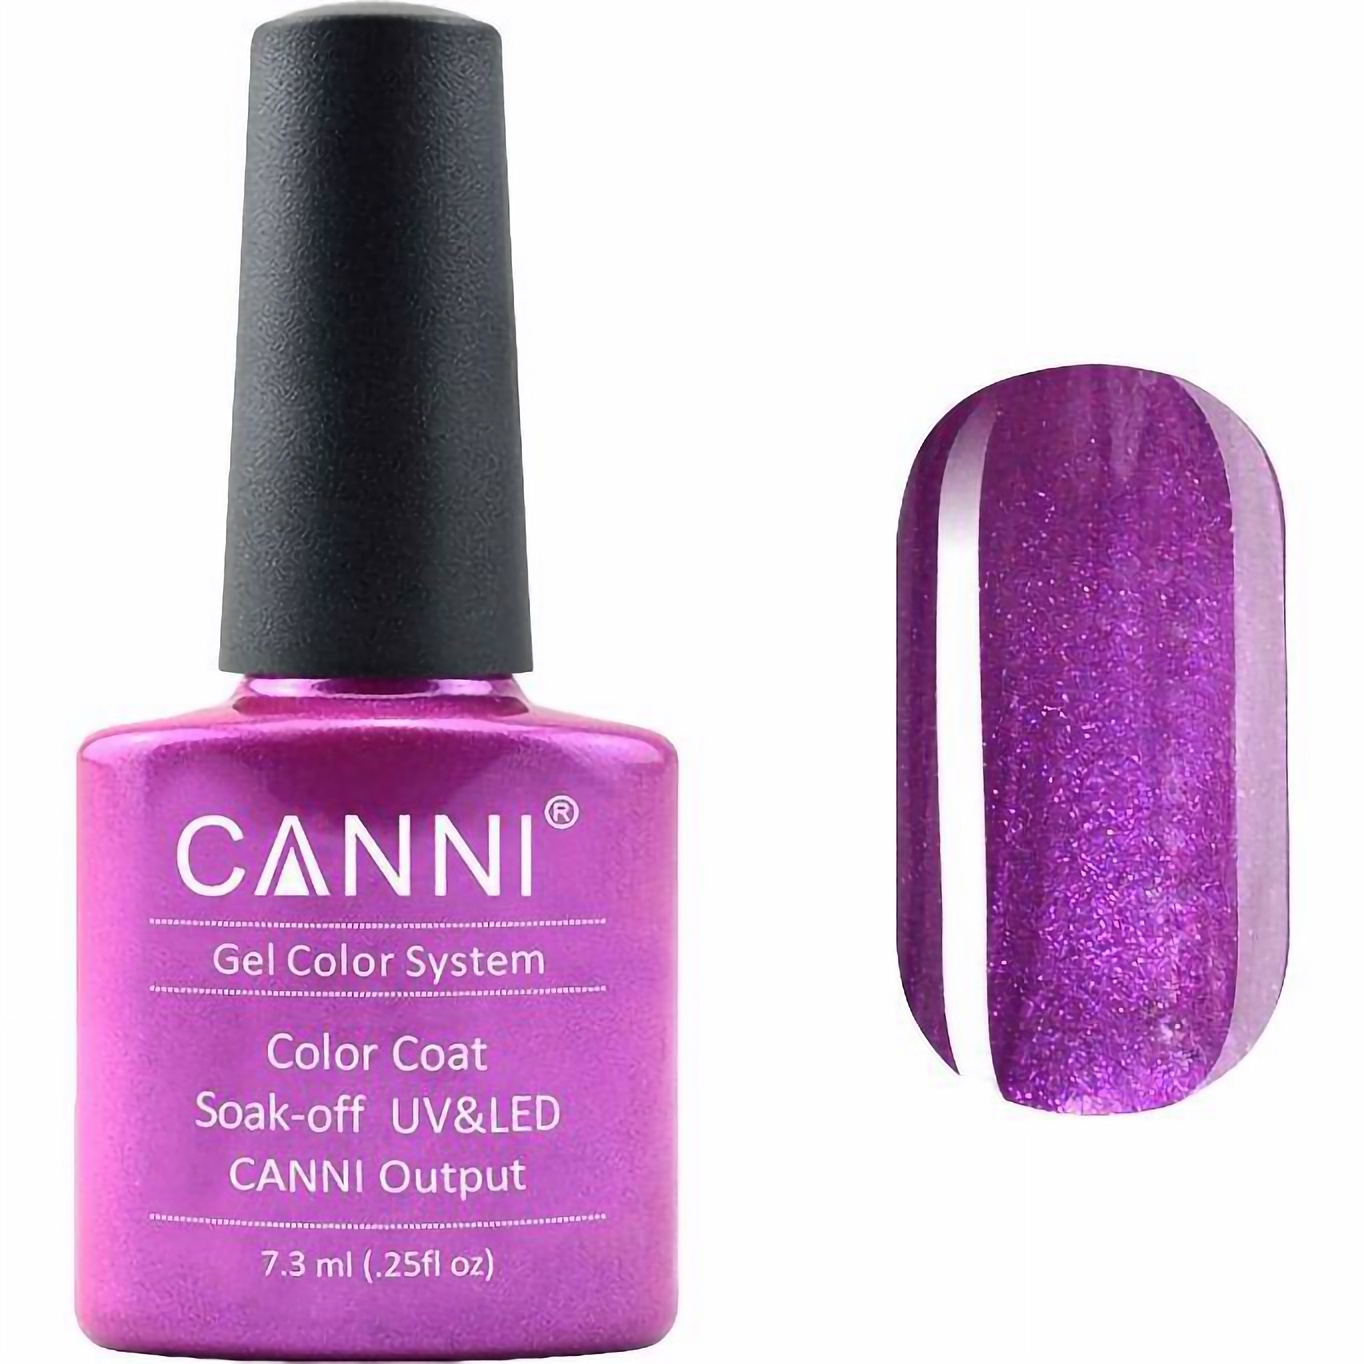 Гель-лак Canni Color Coat Soak-off UV&LED 193 сиреневый перламутр 7.3 мл - фото 1